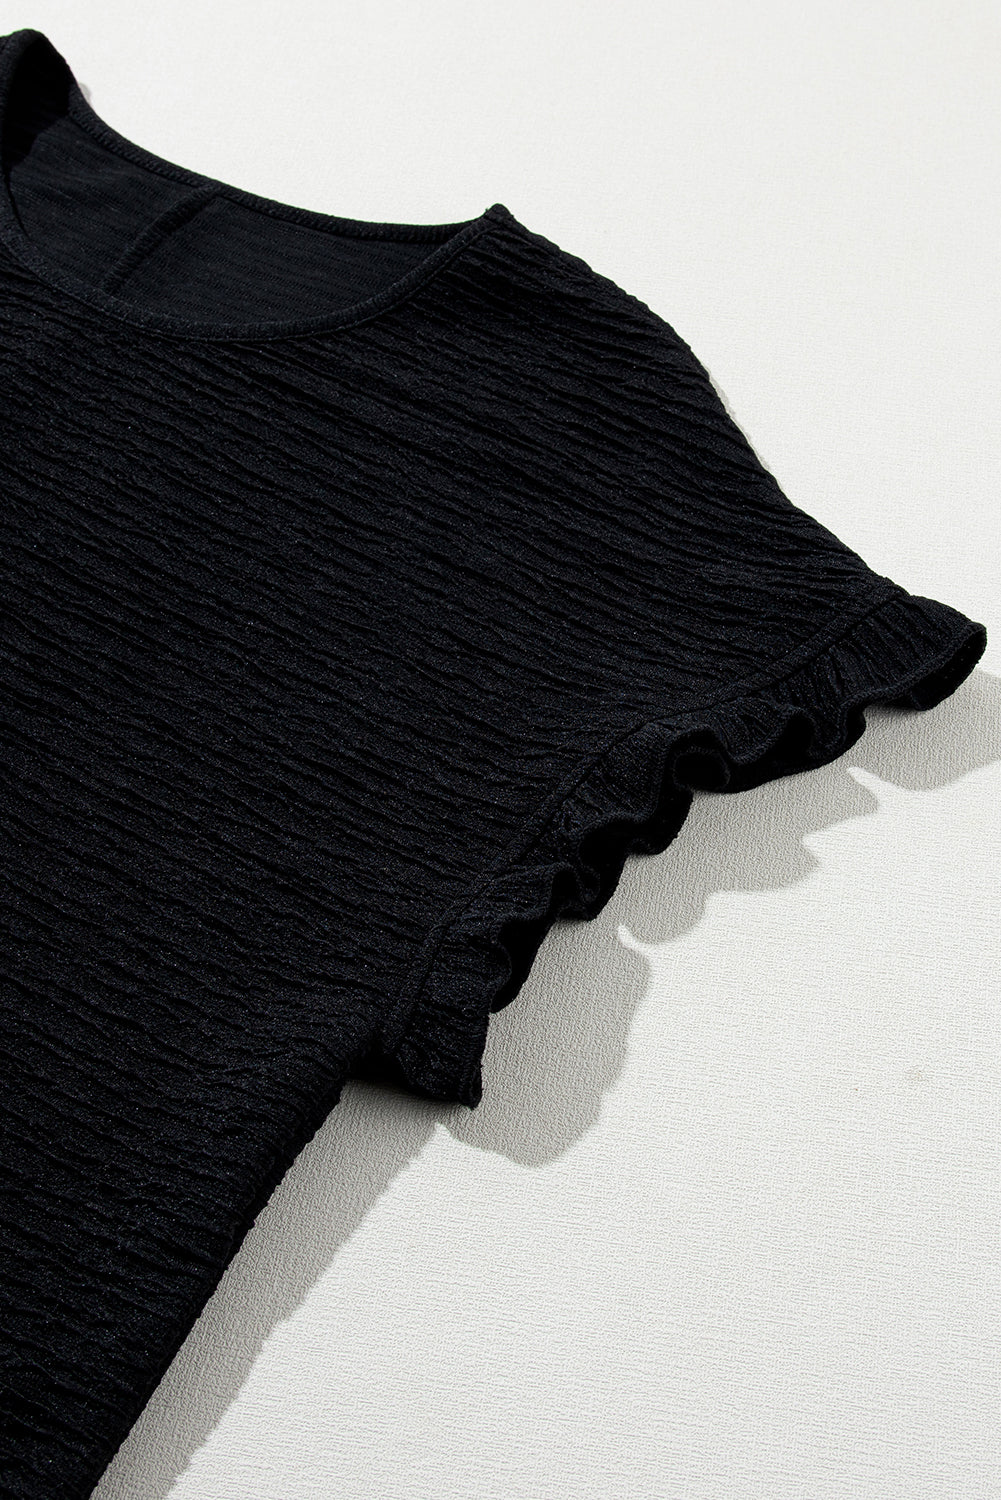 Jednobojna teksturirana bluza kratkih rukava s volanima boje marelice